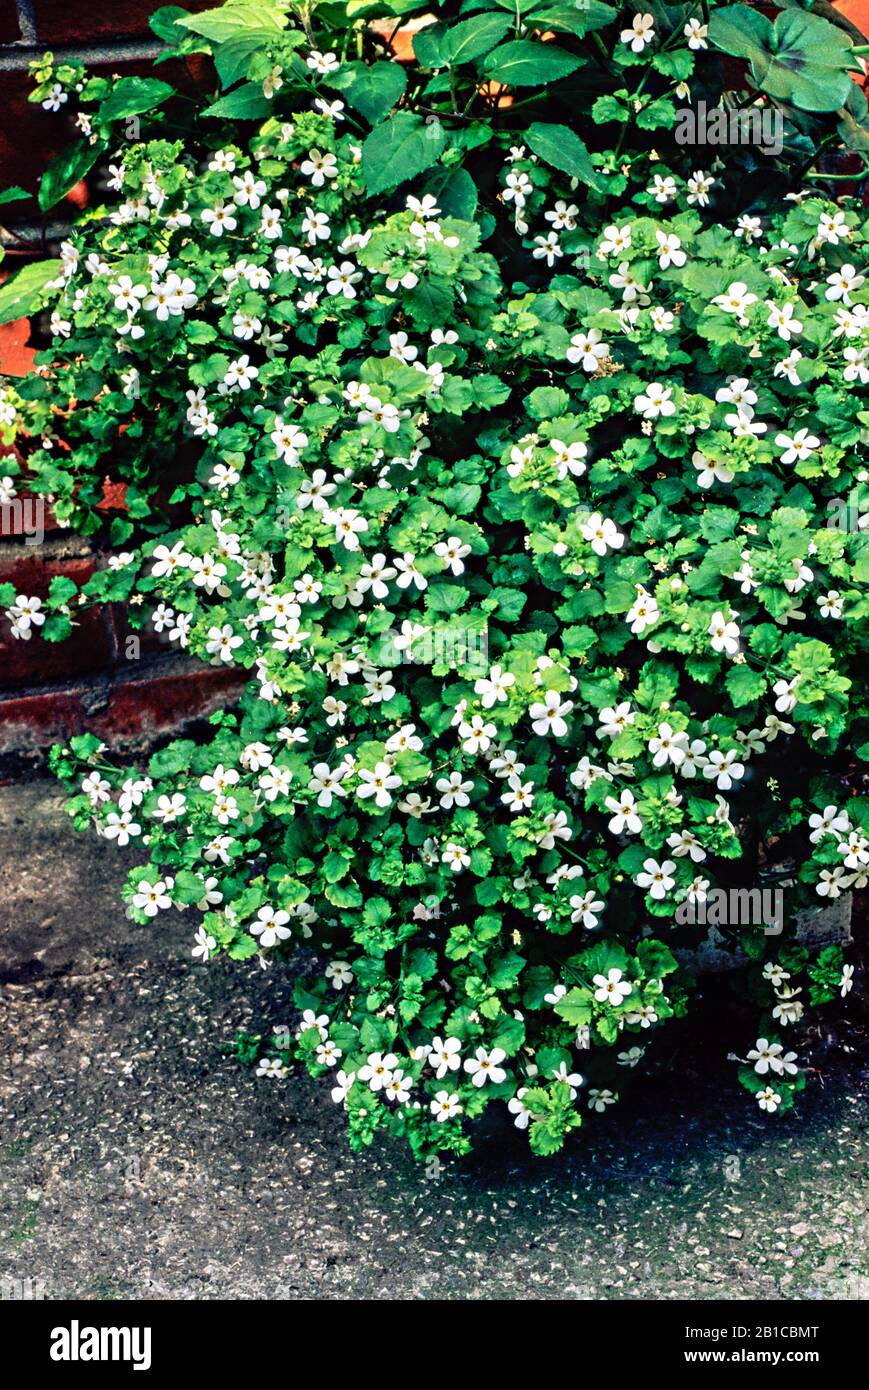 Bacopa flocon de neige dans la fleur qui se trouve sur le côté d'un récipient. Peut être utilisé dans les paniers et les conteneurs ou comme couverture terrestre dans les frontières en été. Banque D'Images